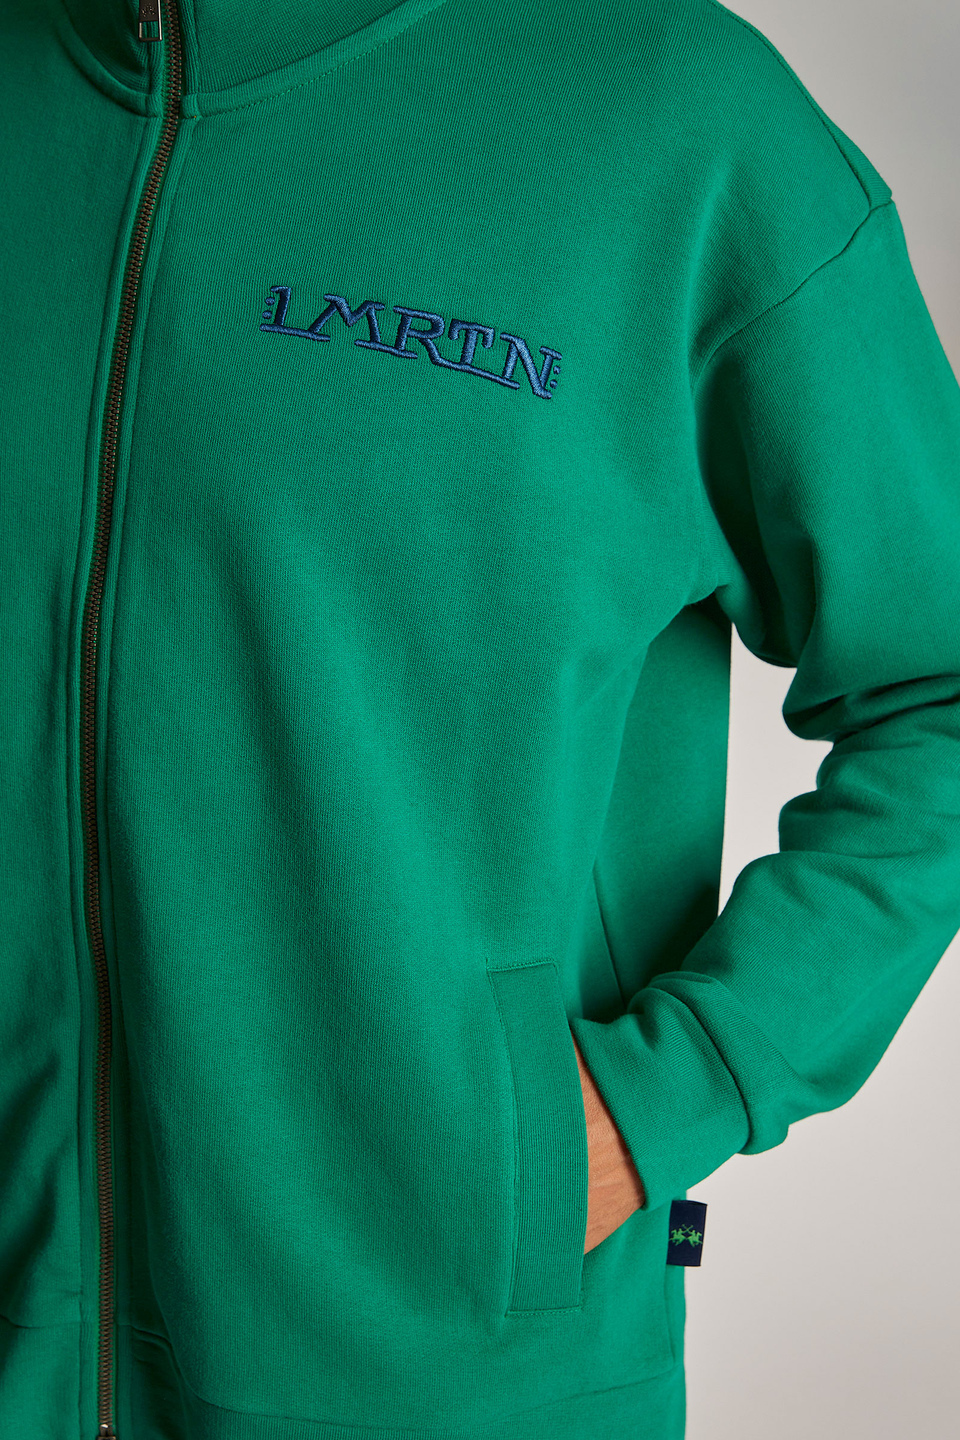 Sweat-shirt homme 100% coton, avec fermeture zippée et coupe oversize - La Martina - Official Online Shop